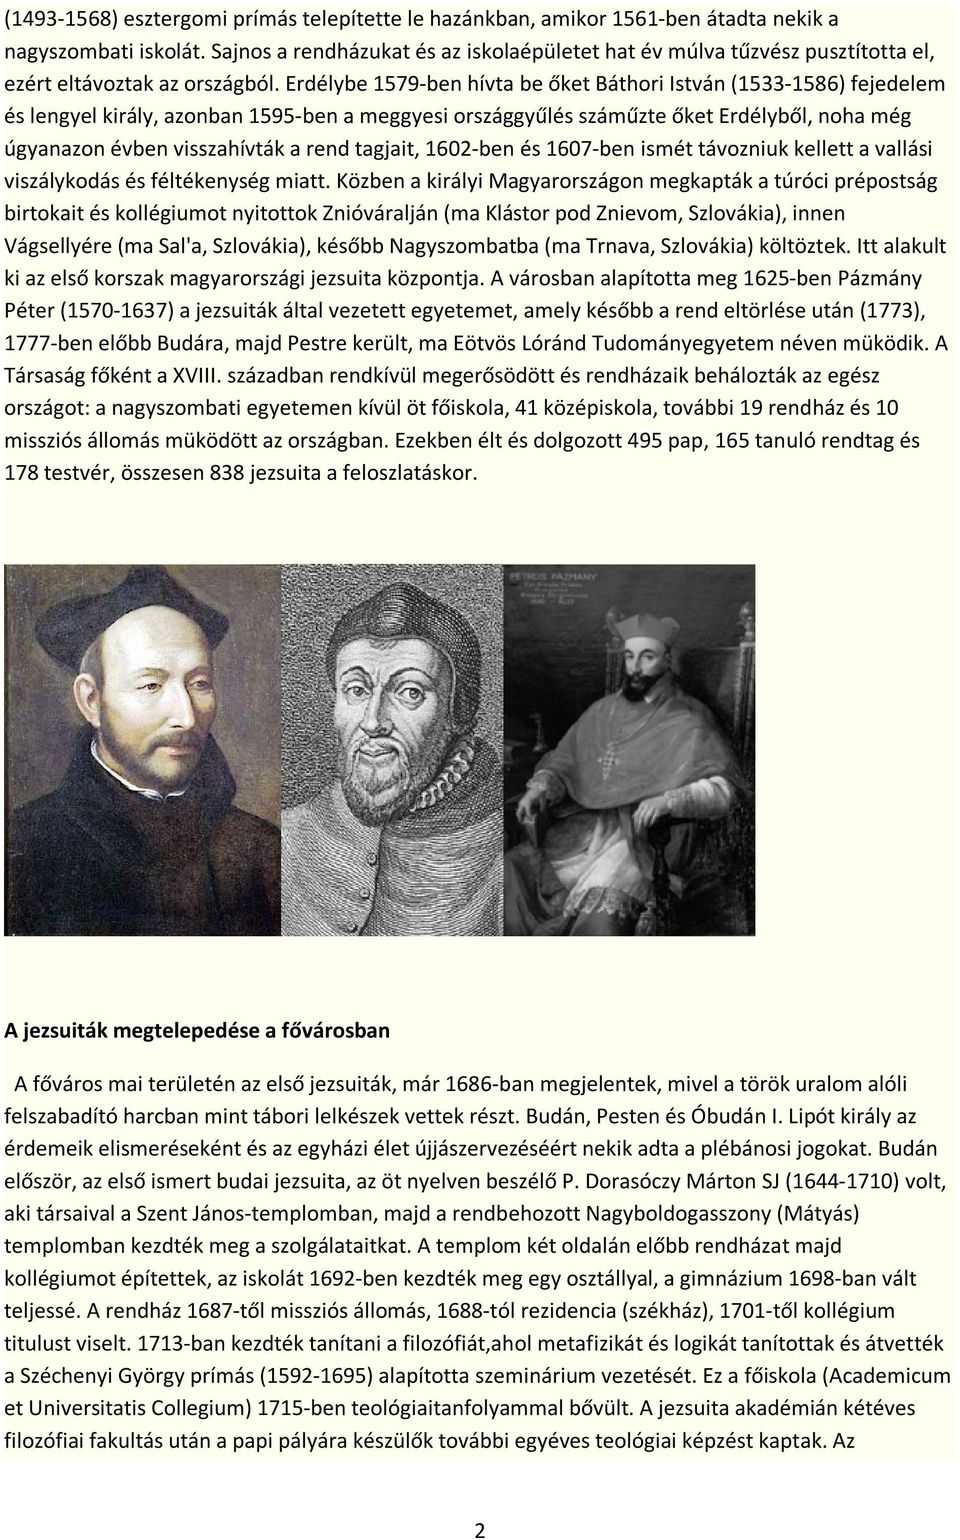 Erdélybe 1579-ben hívta be őket Báthori István (1533-1586) fejedelem és lengyel király, azonban 1595-ben a meggyesi országgyűlés száműzte őket Erdélyből, noha még úgyanazon évben visszahívták a rend